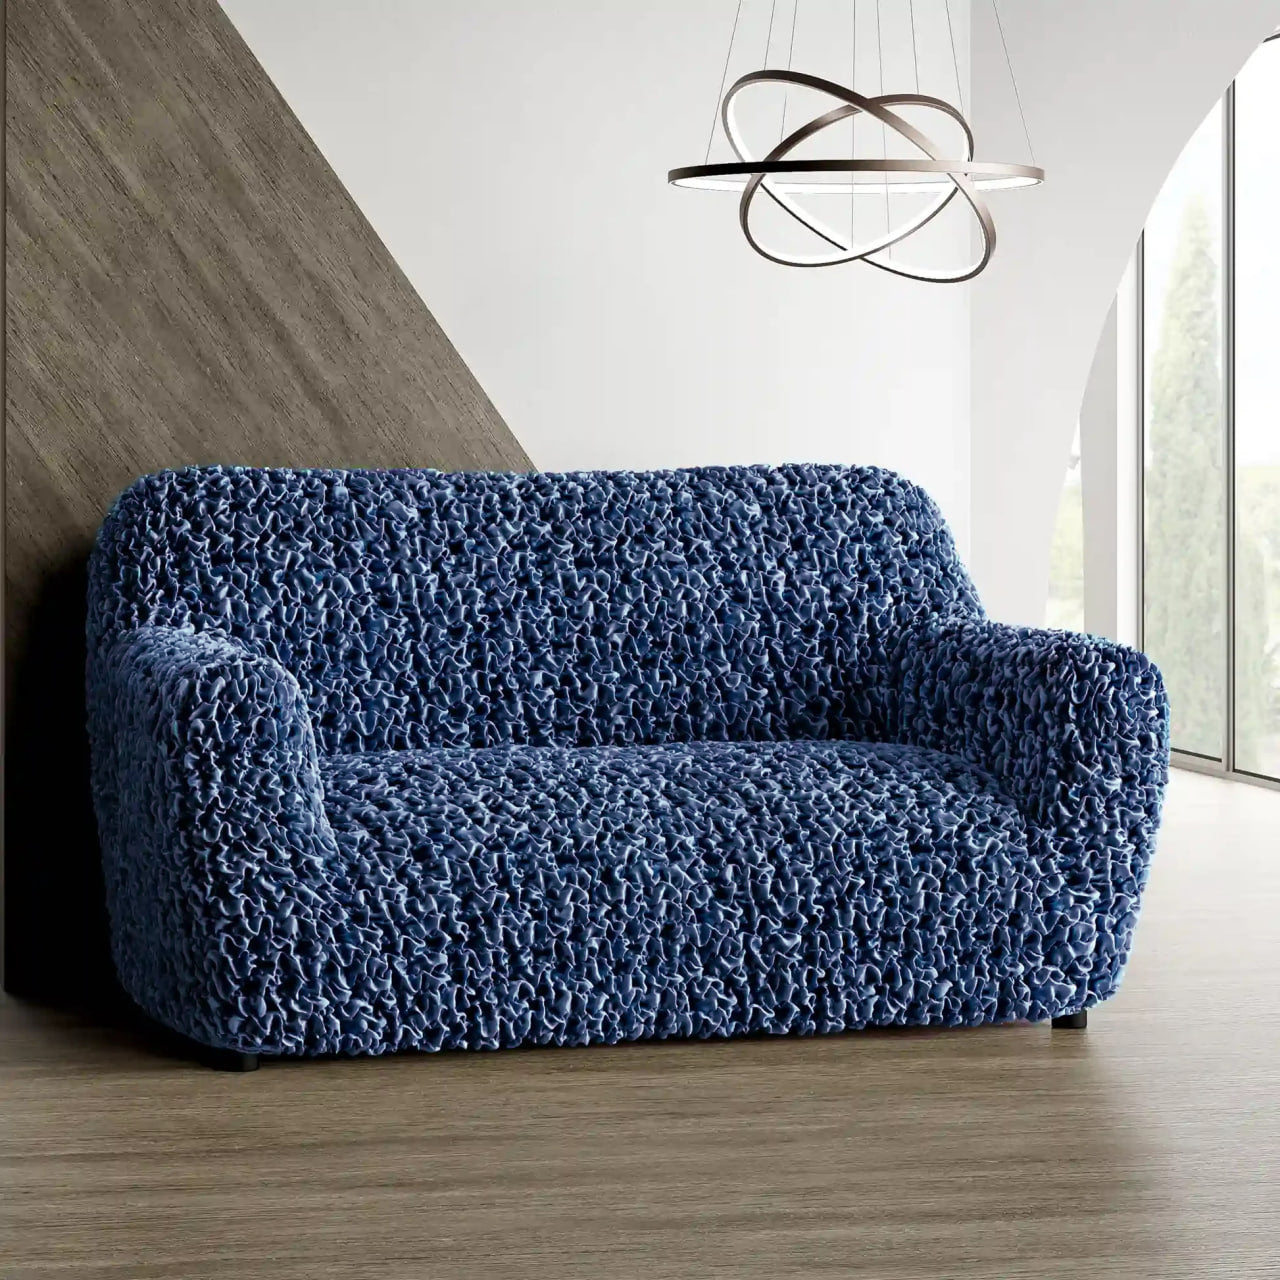 2 Seater Sofa Cover - Blue, Fuco Velvet